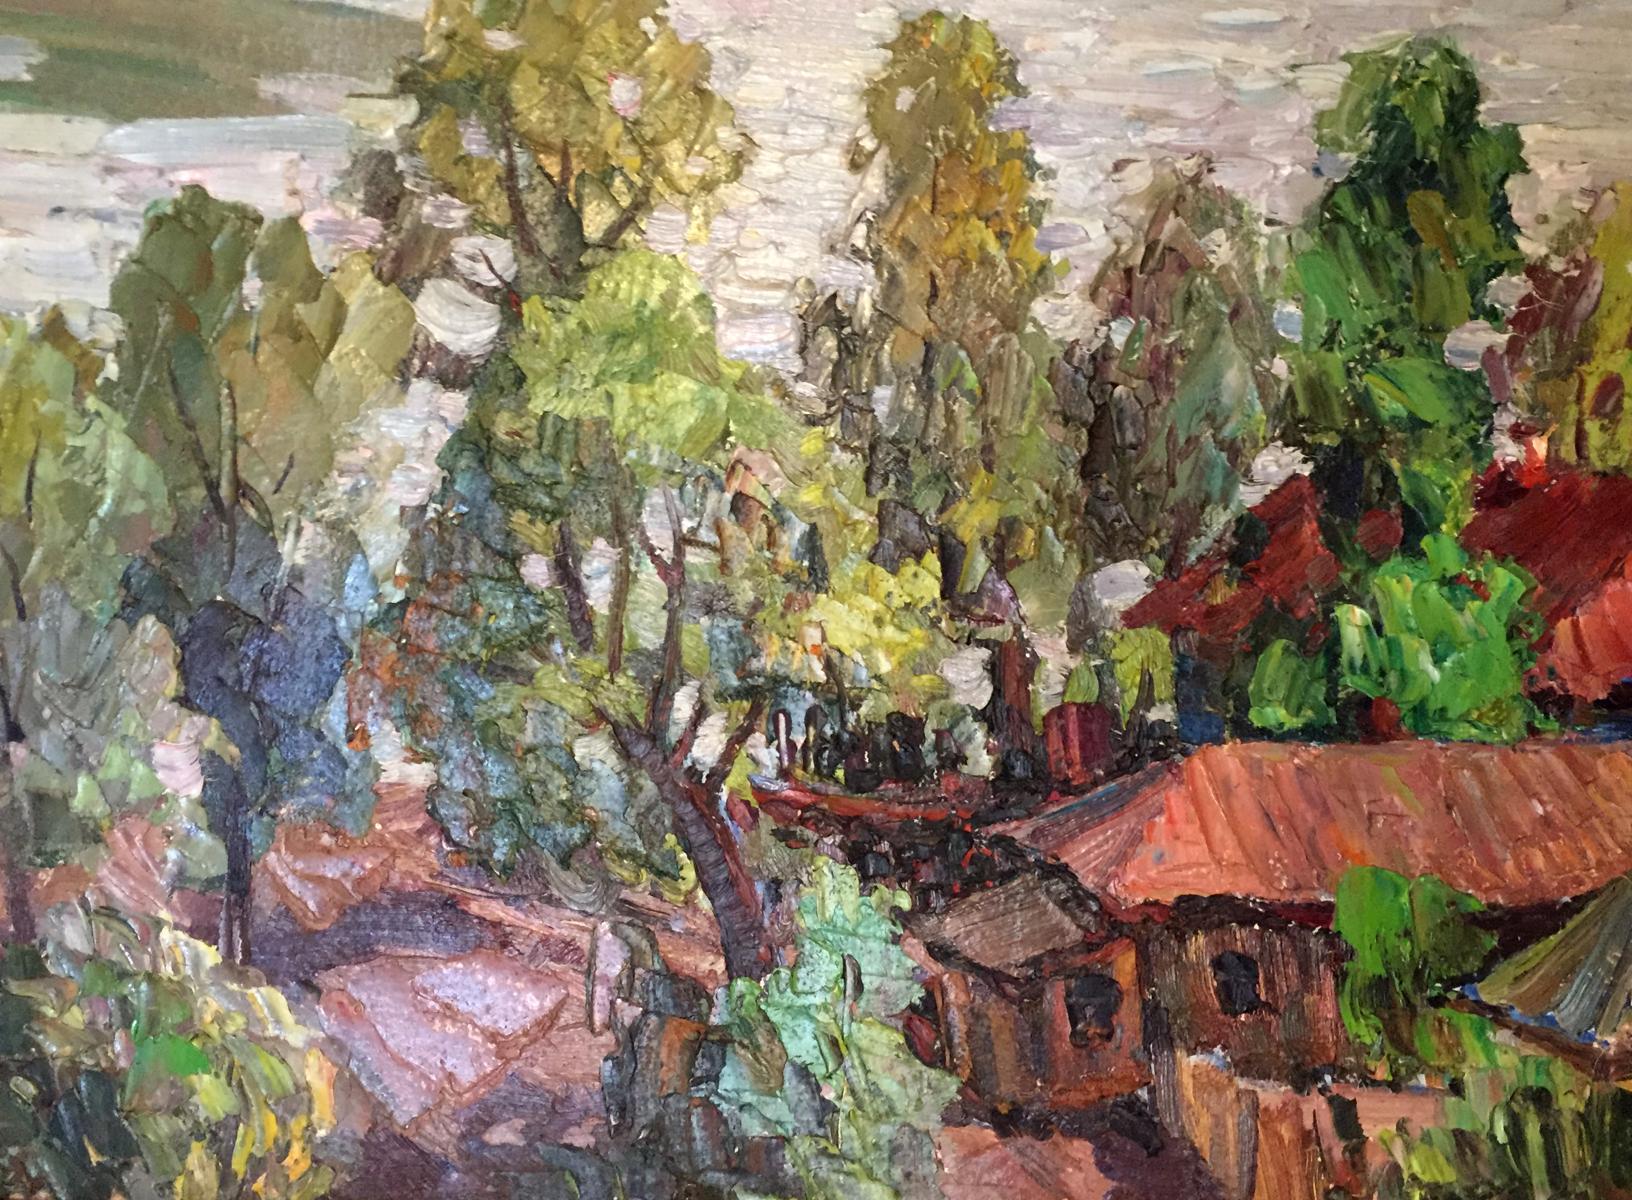 Sednevskaya Grove depicted in oil by Kolomoitsev